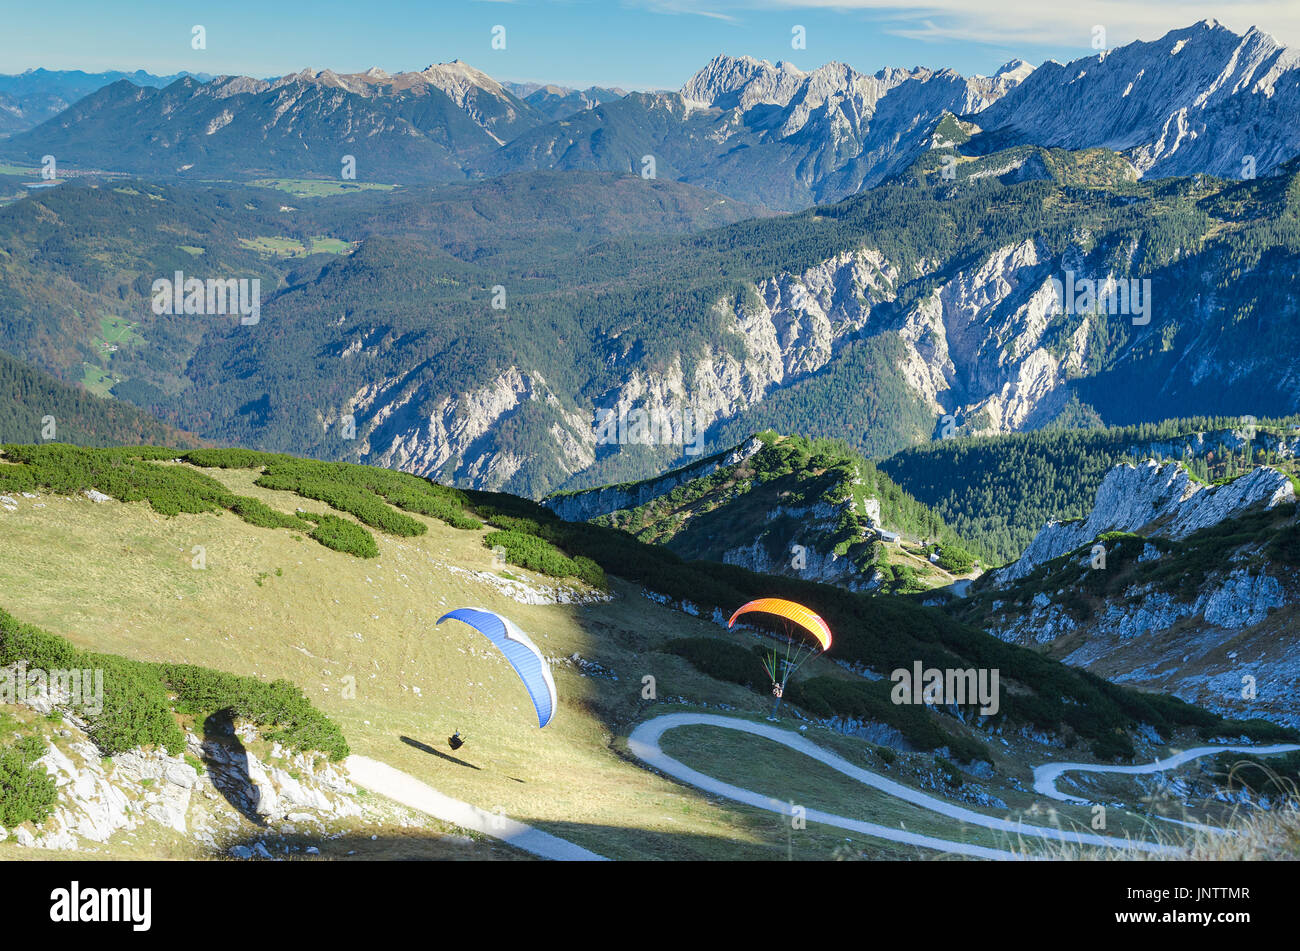 Lancement et paraplanes paire planeur dans les montagnes des Alpes bavaroises. Stock photo avec vue aérienne sur le paysage alpin. Banque D'Images